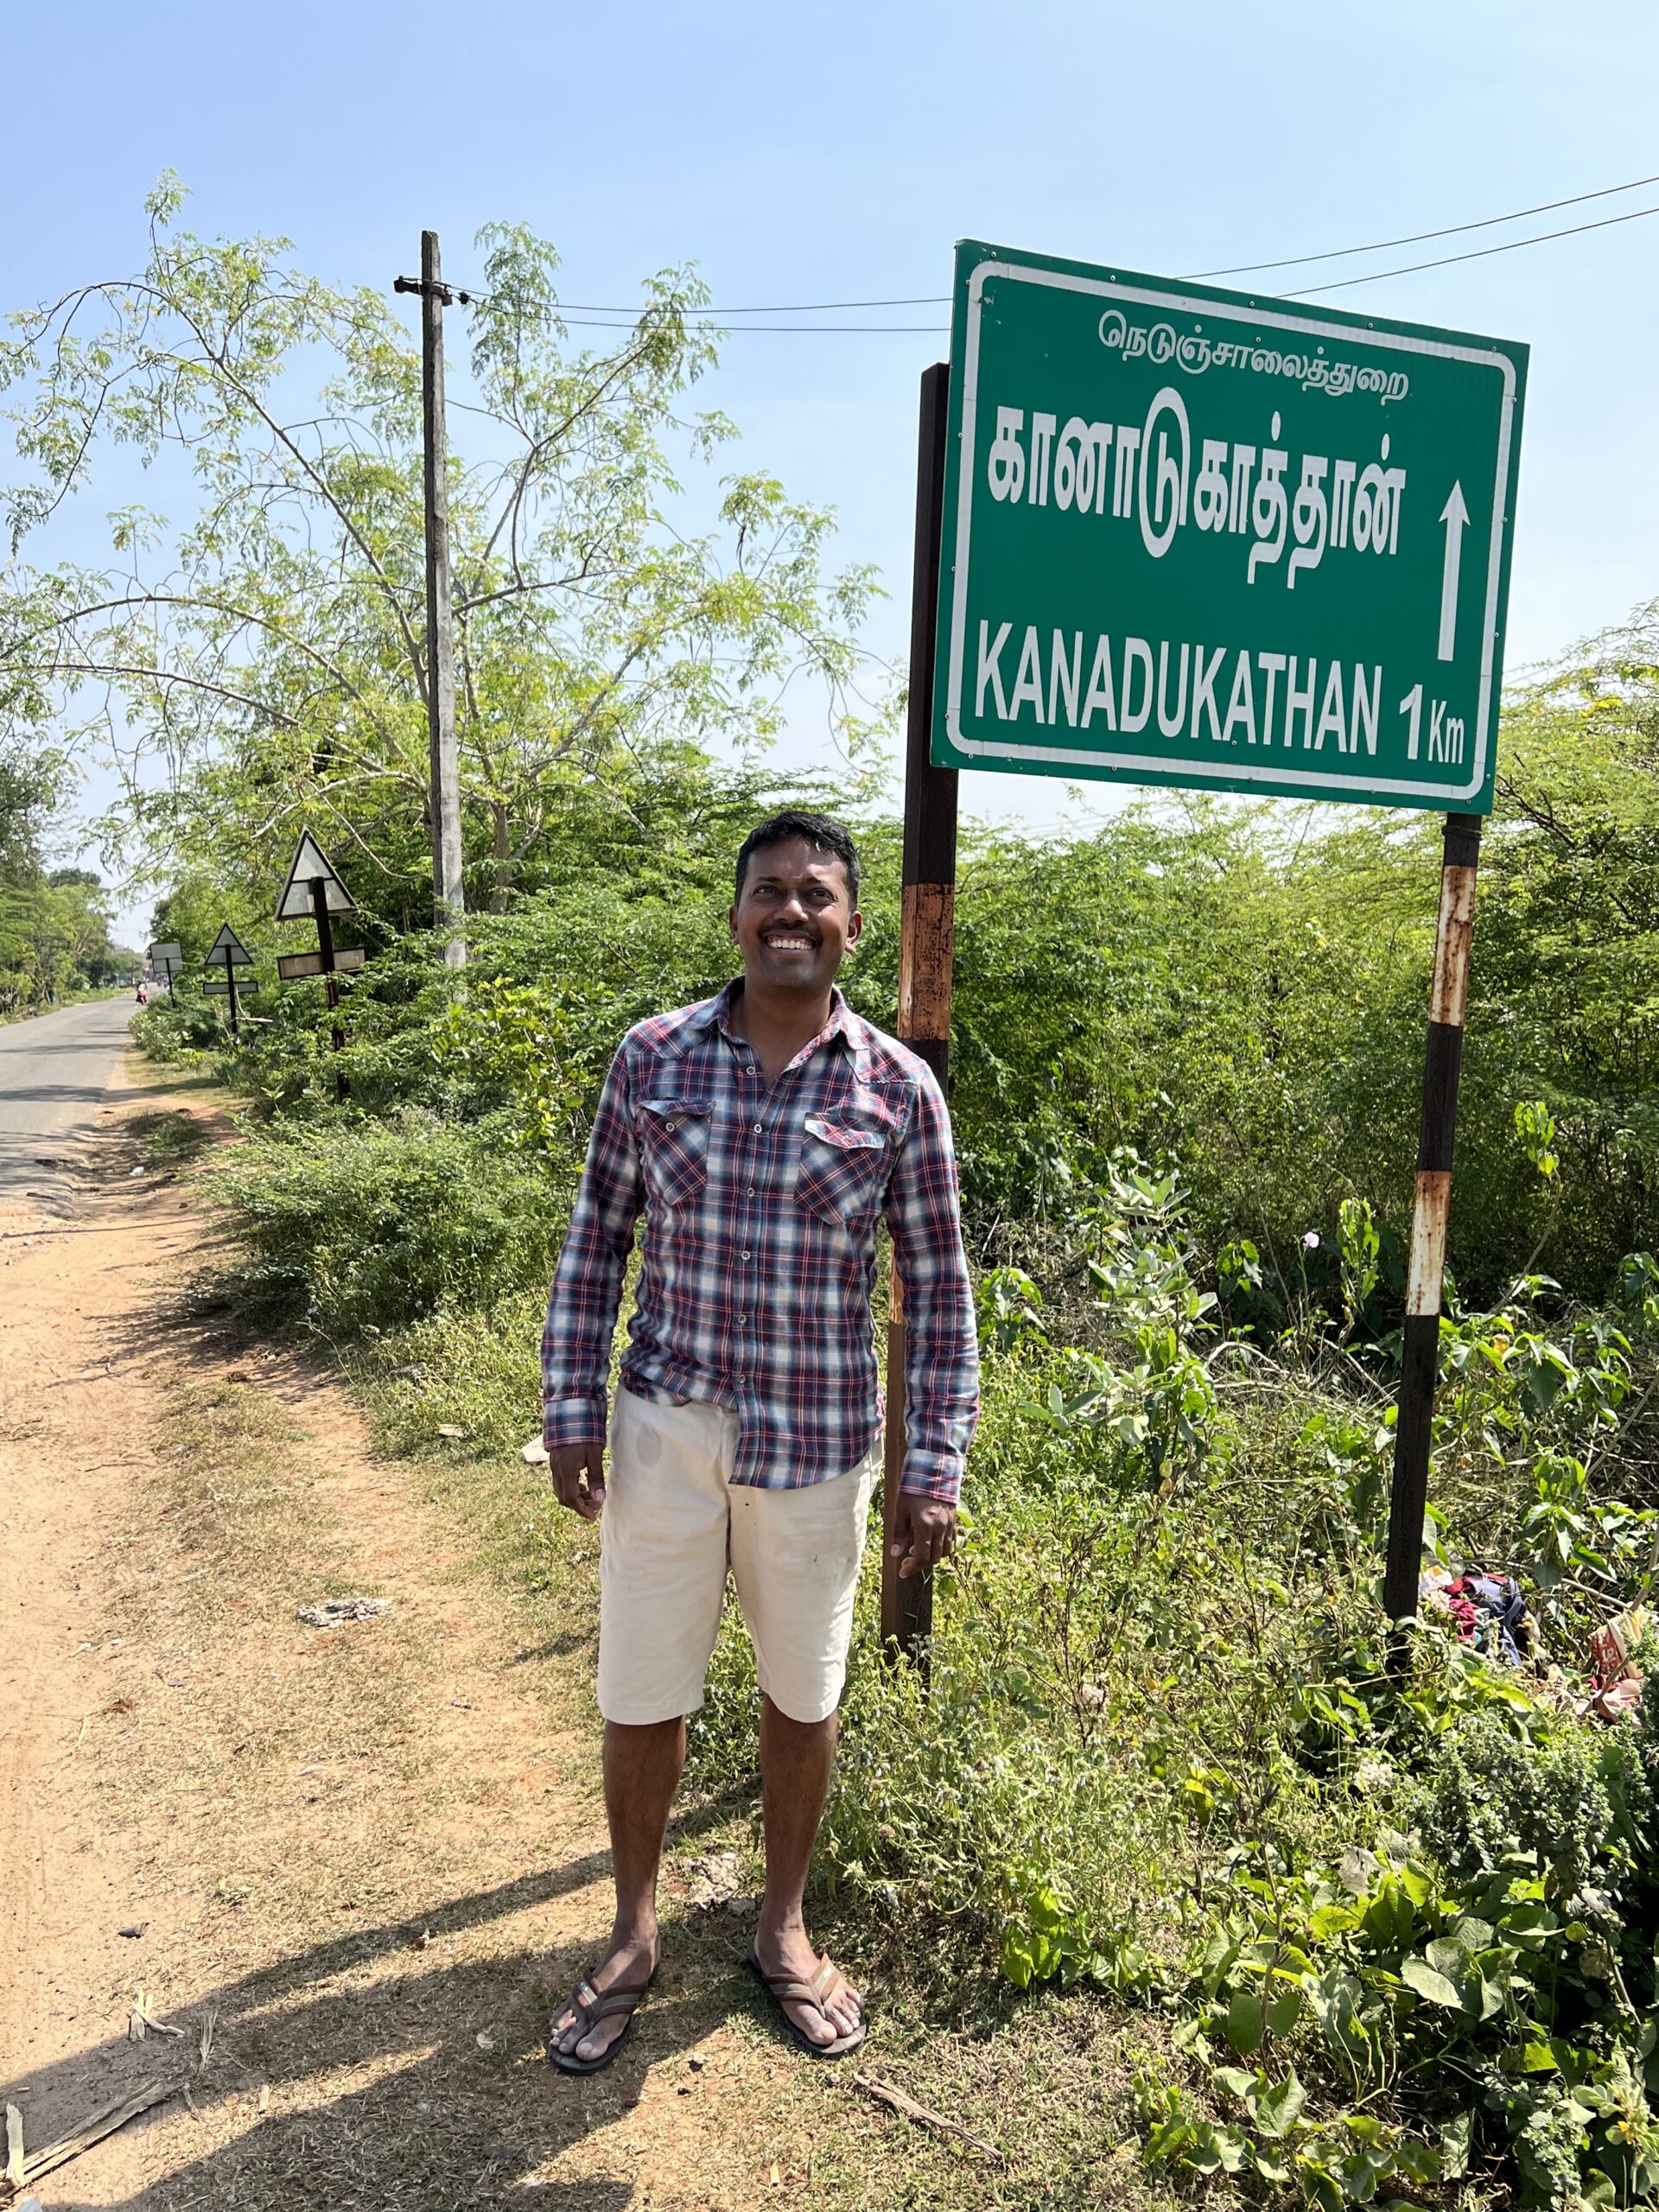 Town of Kanadukathan